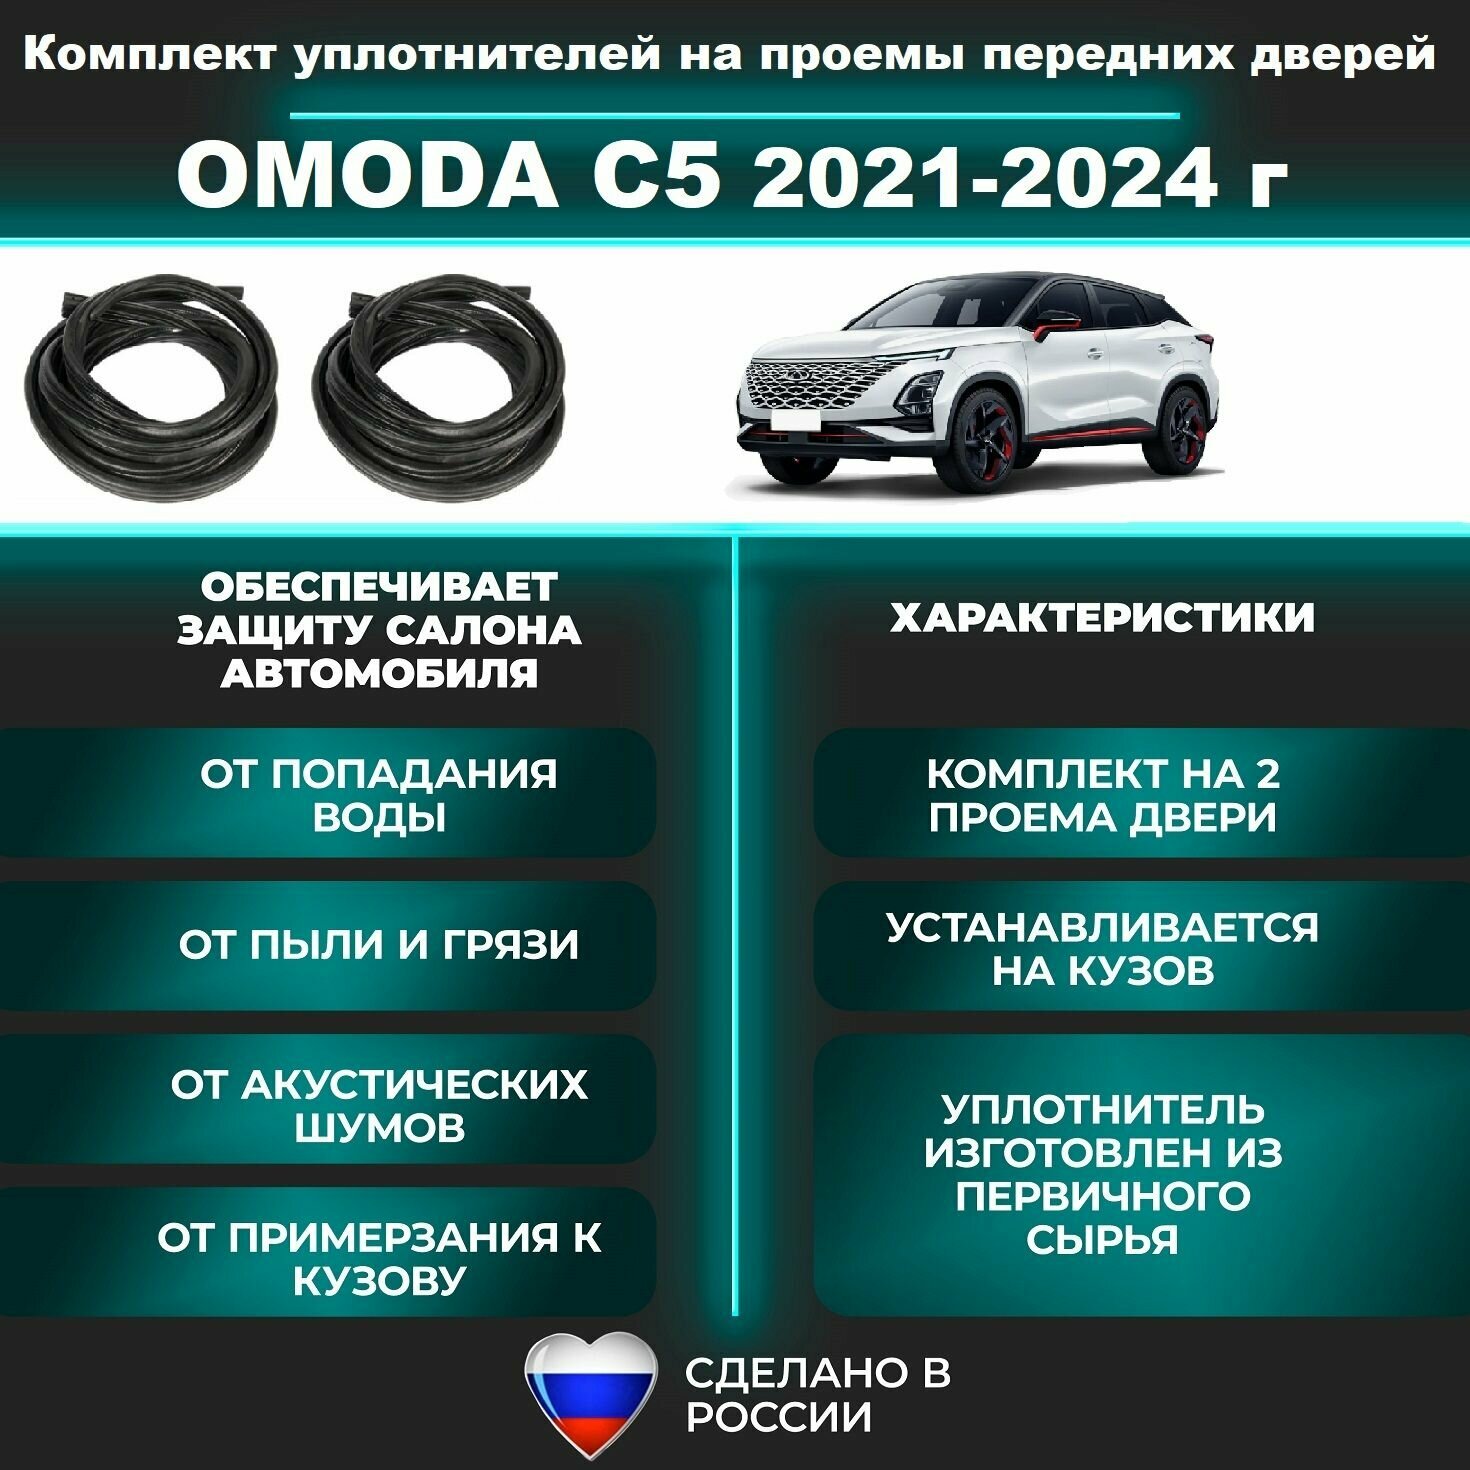 Комплект уплотнителей проема передних дверей подходит на OMODA C5 2021-2024 г Омода С5 -2 шт